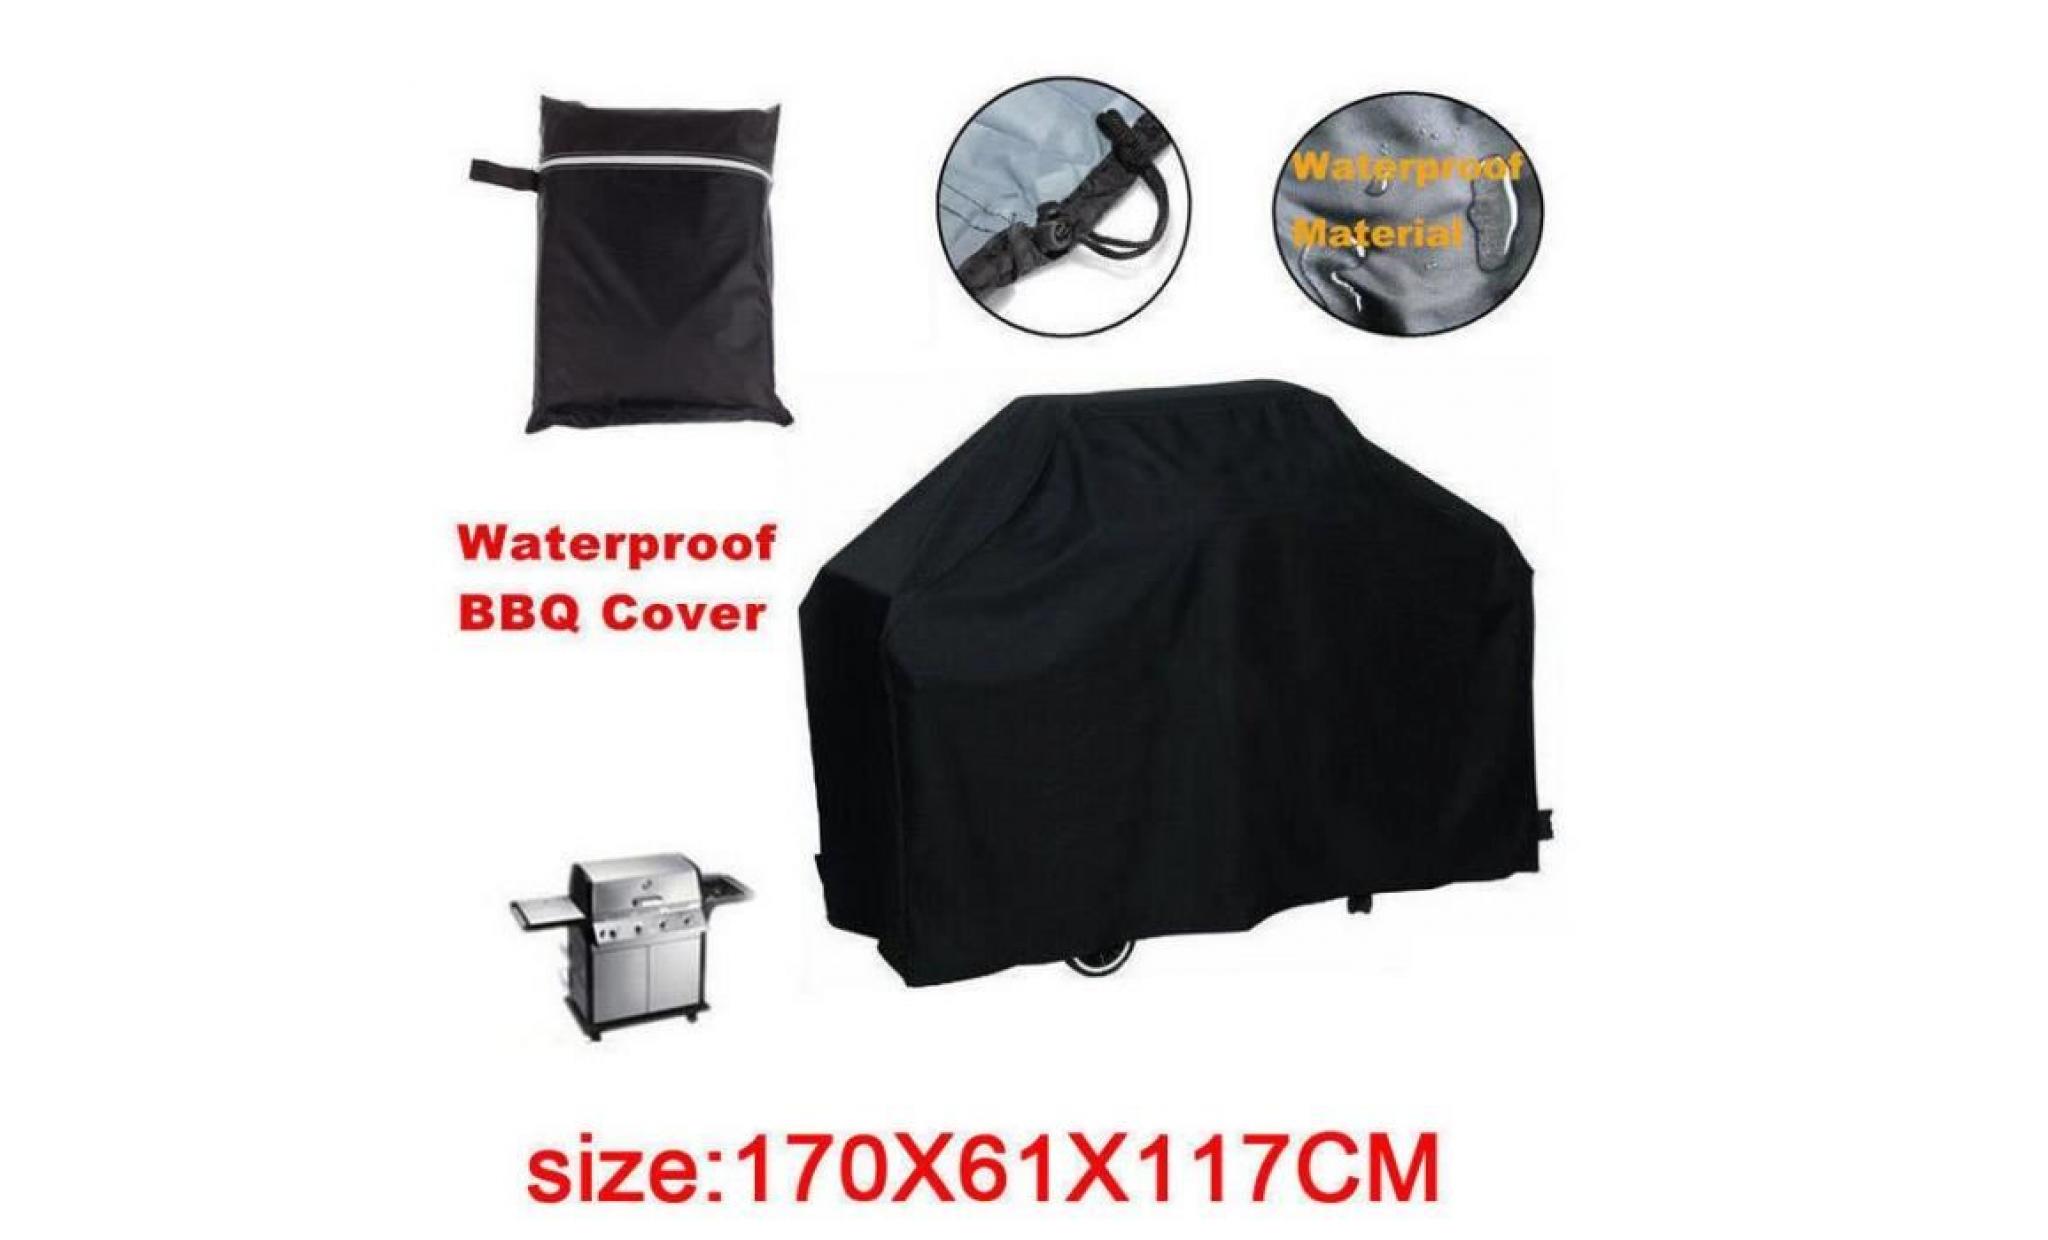  Etanche Housse de Barbecue Protection Anti-UV / Anti-l'humidité Housse Large pour Barbecue Extérieur 170x61x117cm